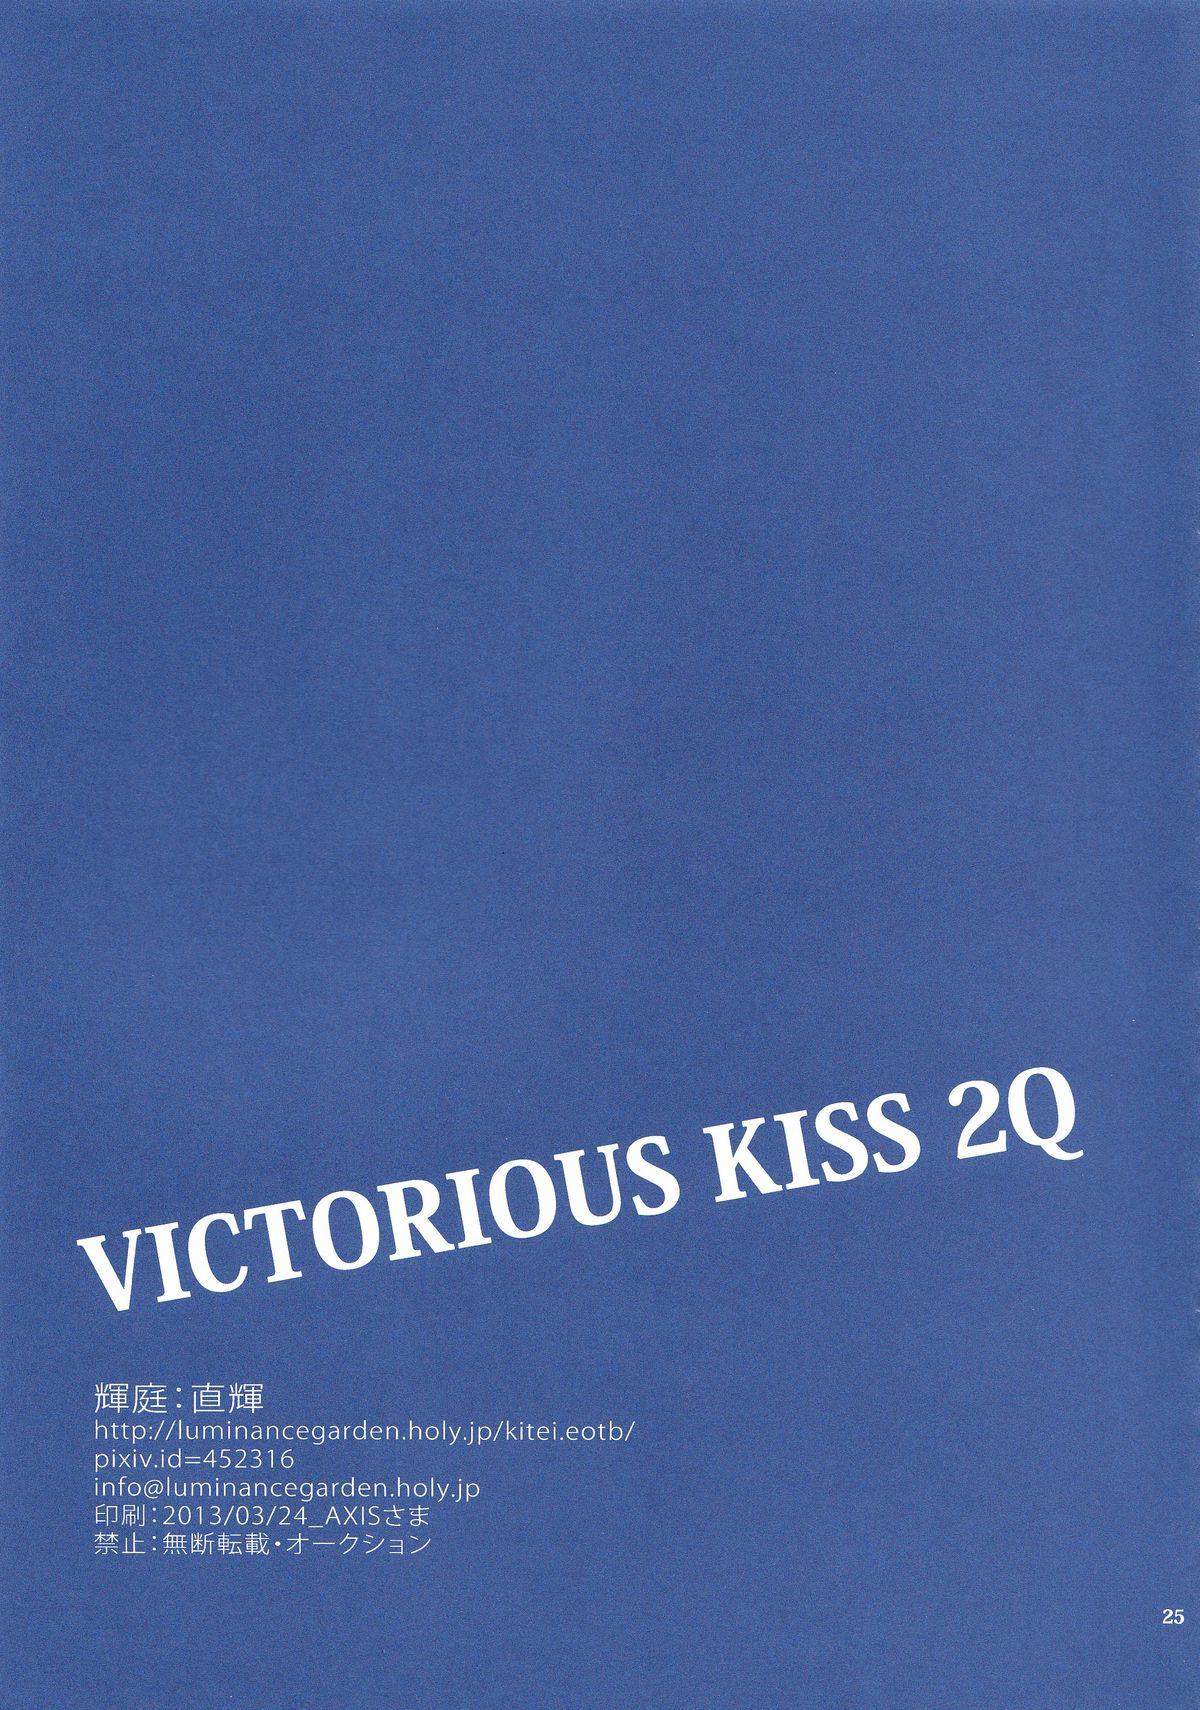 VICTORIOUS KISS 2Q 23